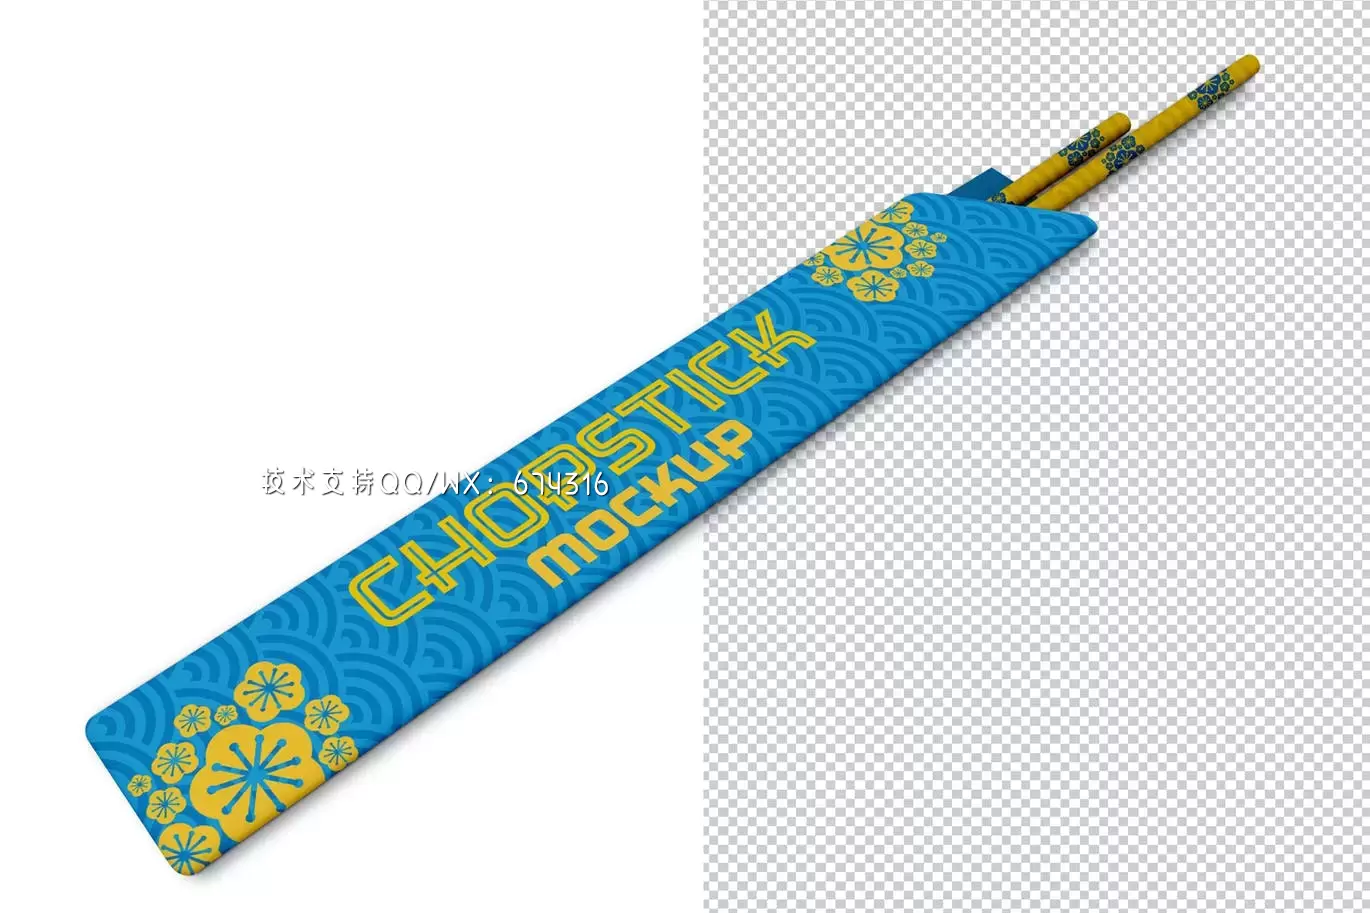 筷子包装纸产品模型(PSD)免费下载